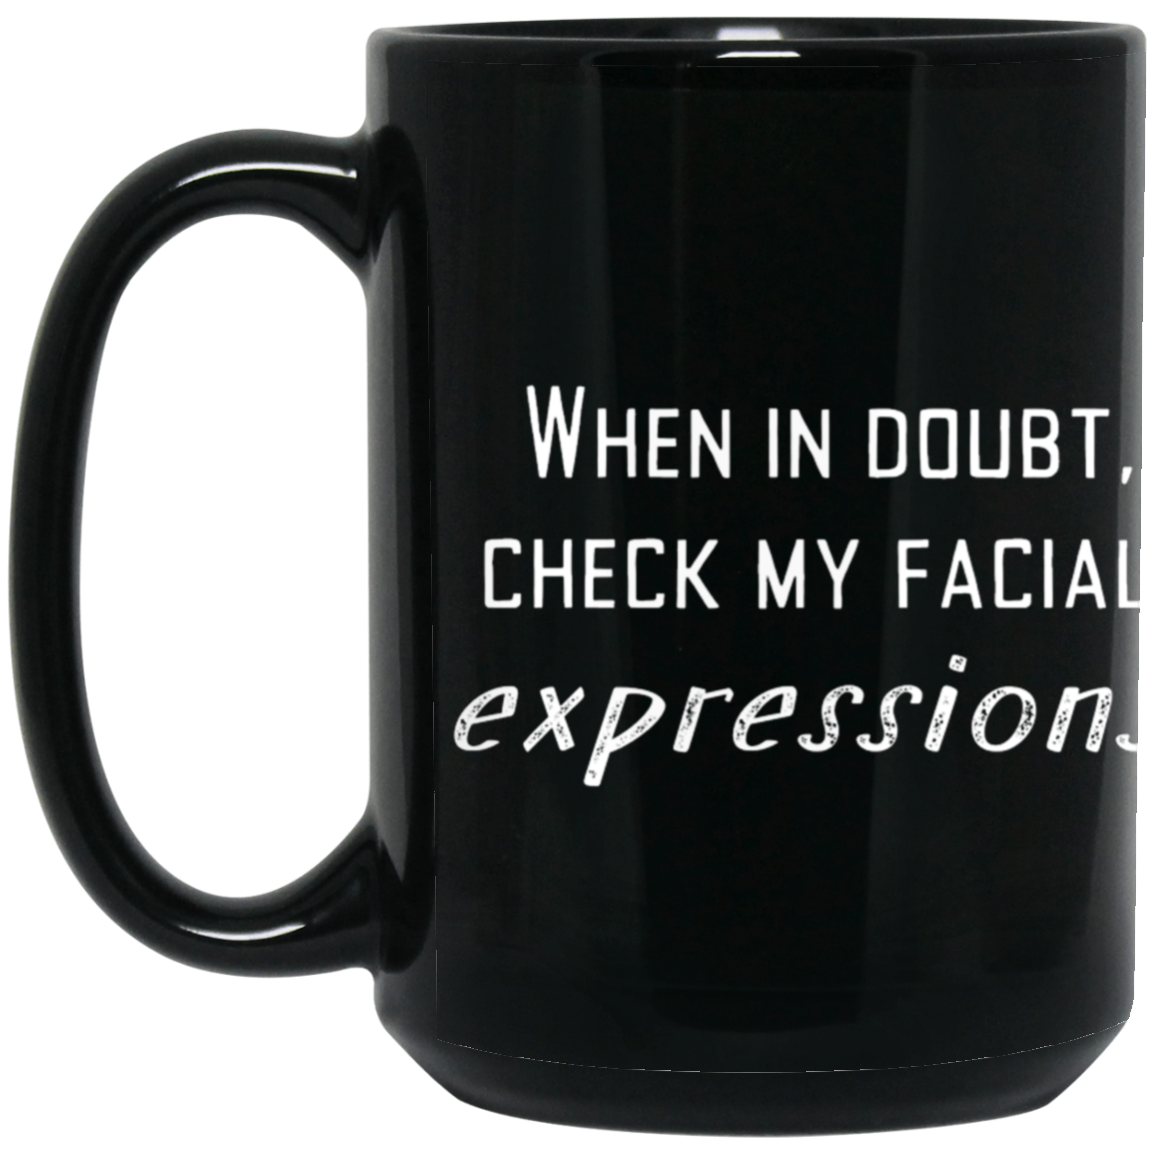 Facial Expressions Black Mug, Birthday Gift